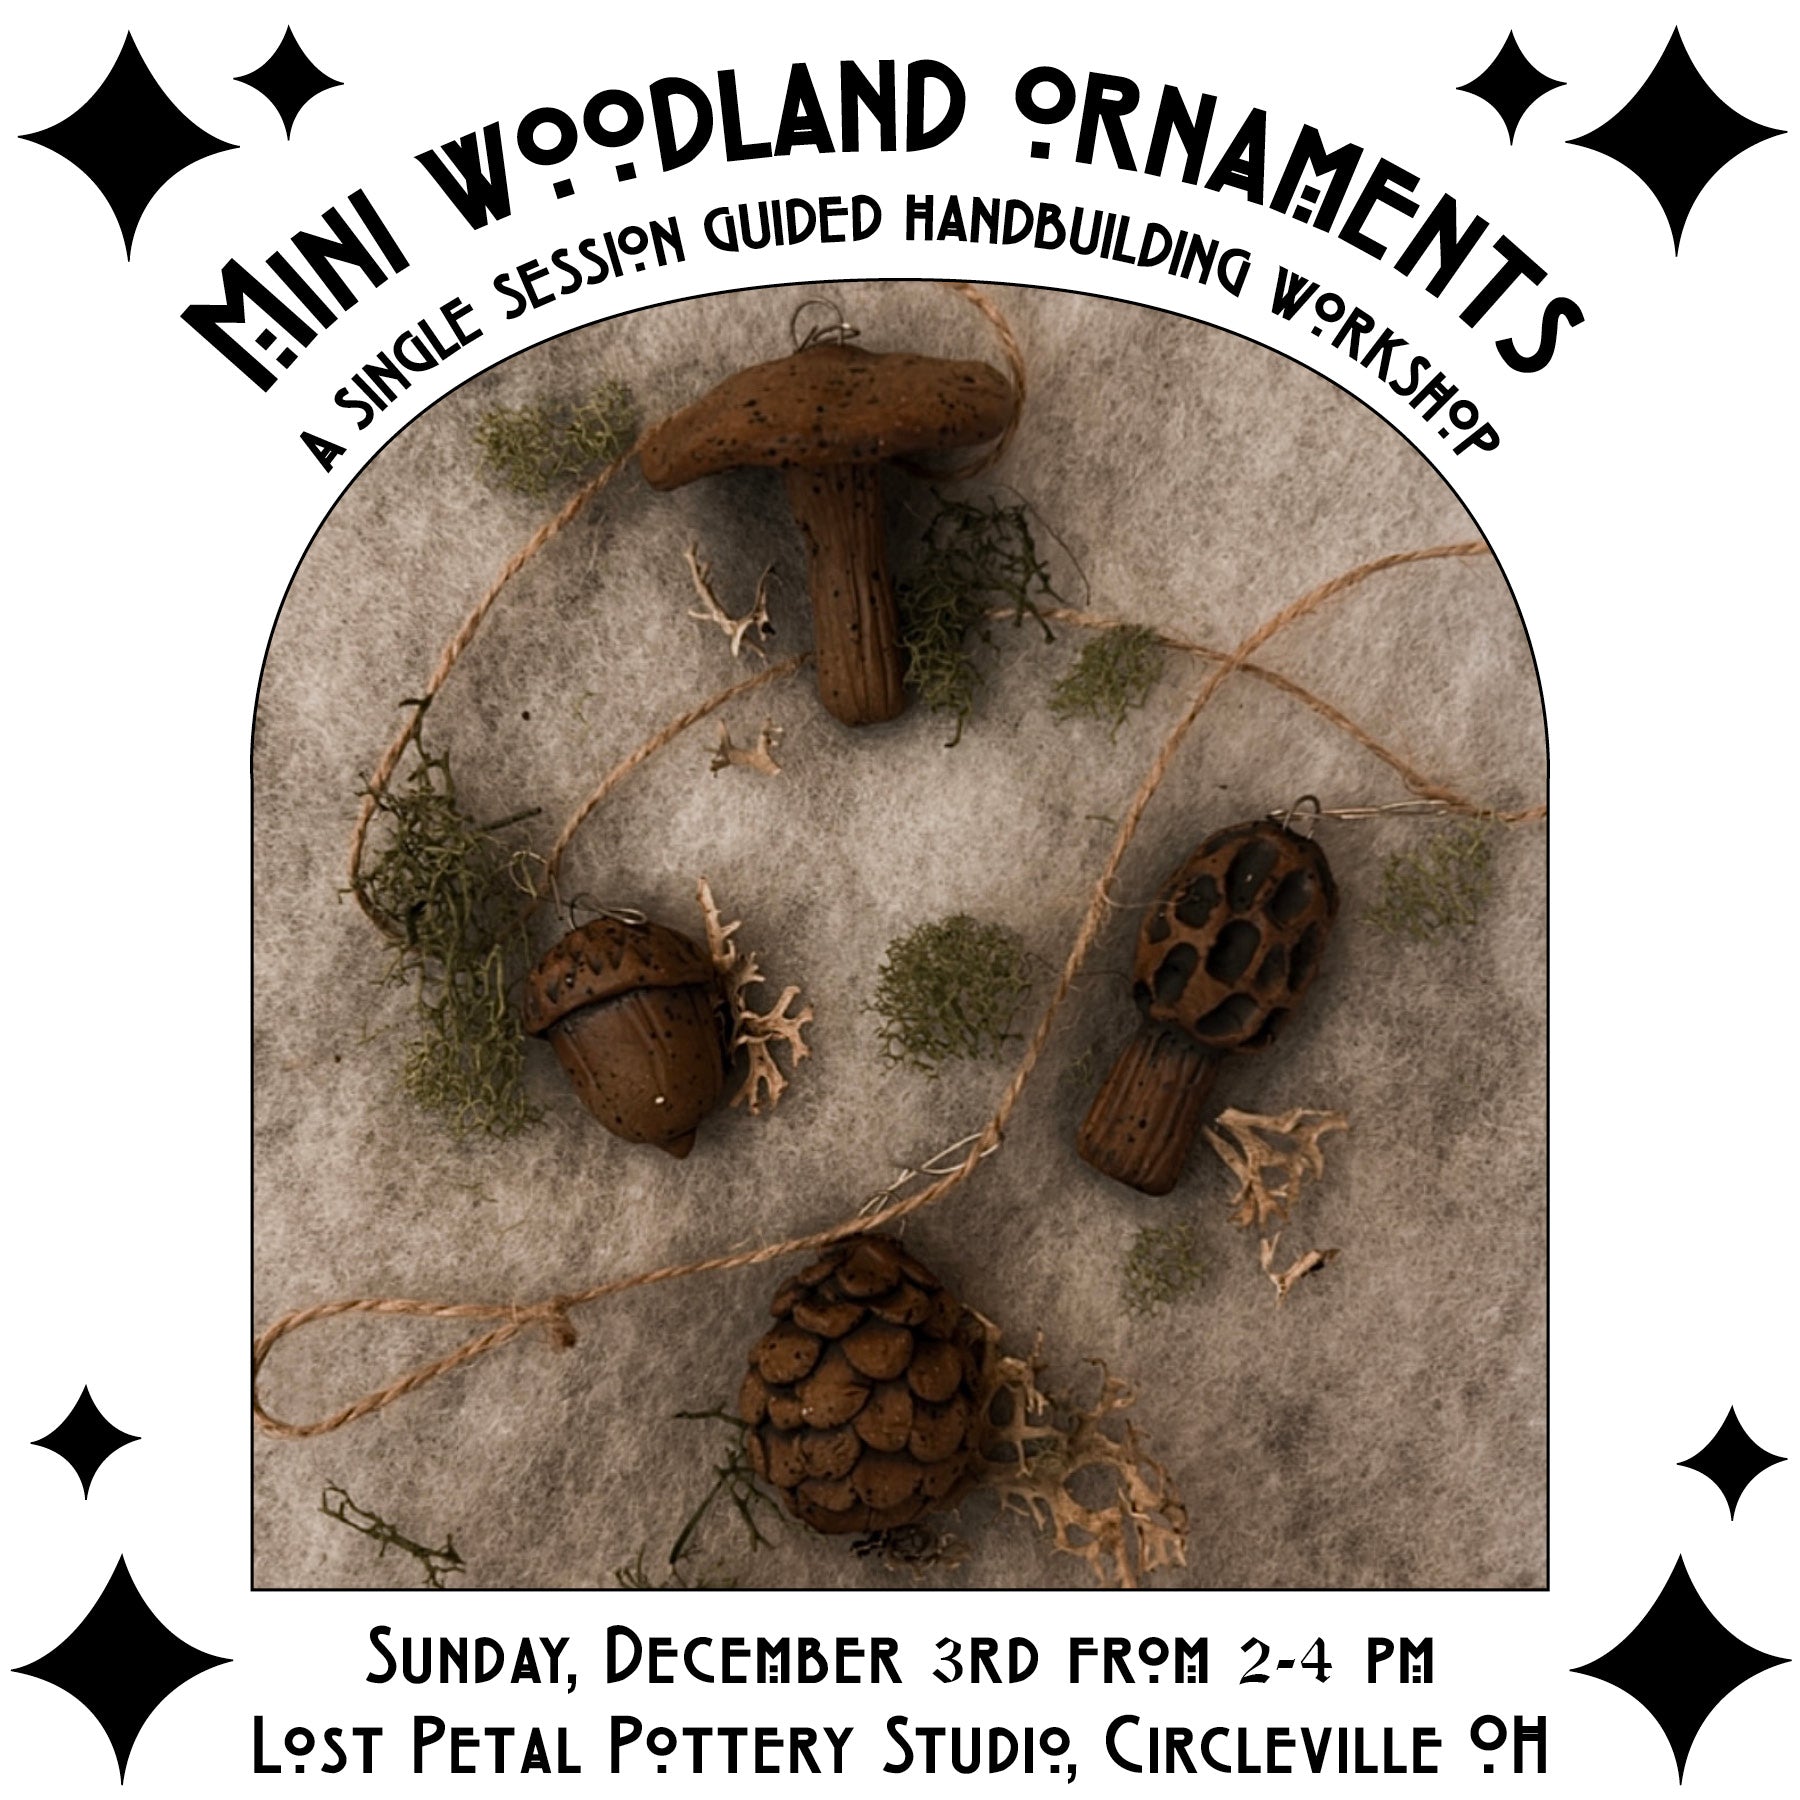 12/3 Mini Woodland Ornament Workshop